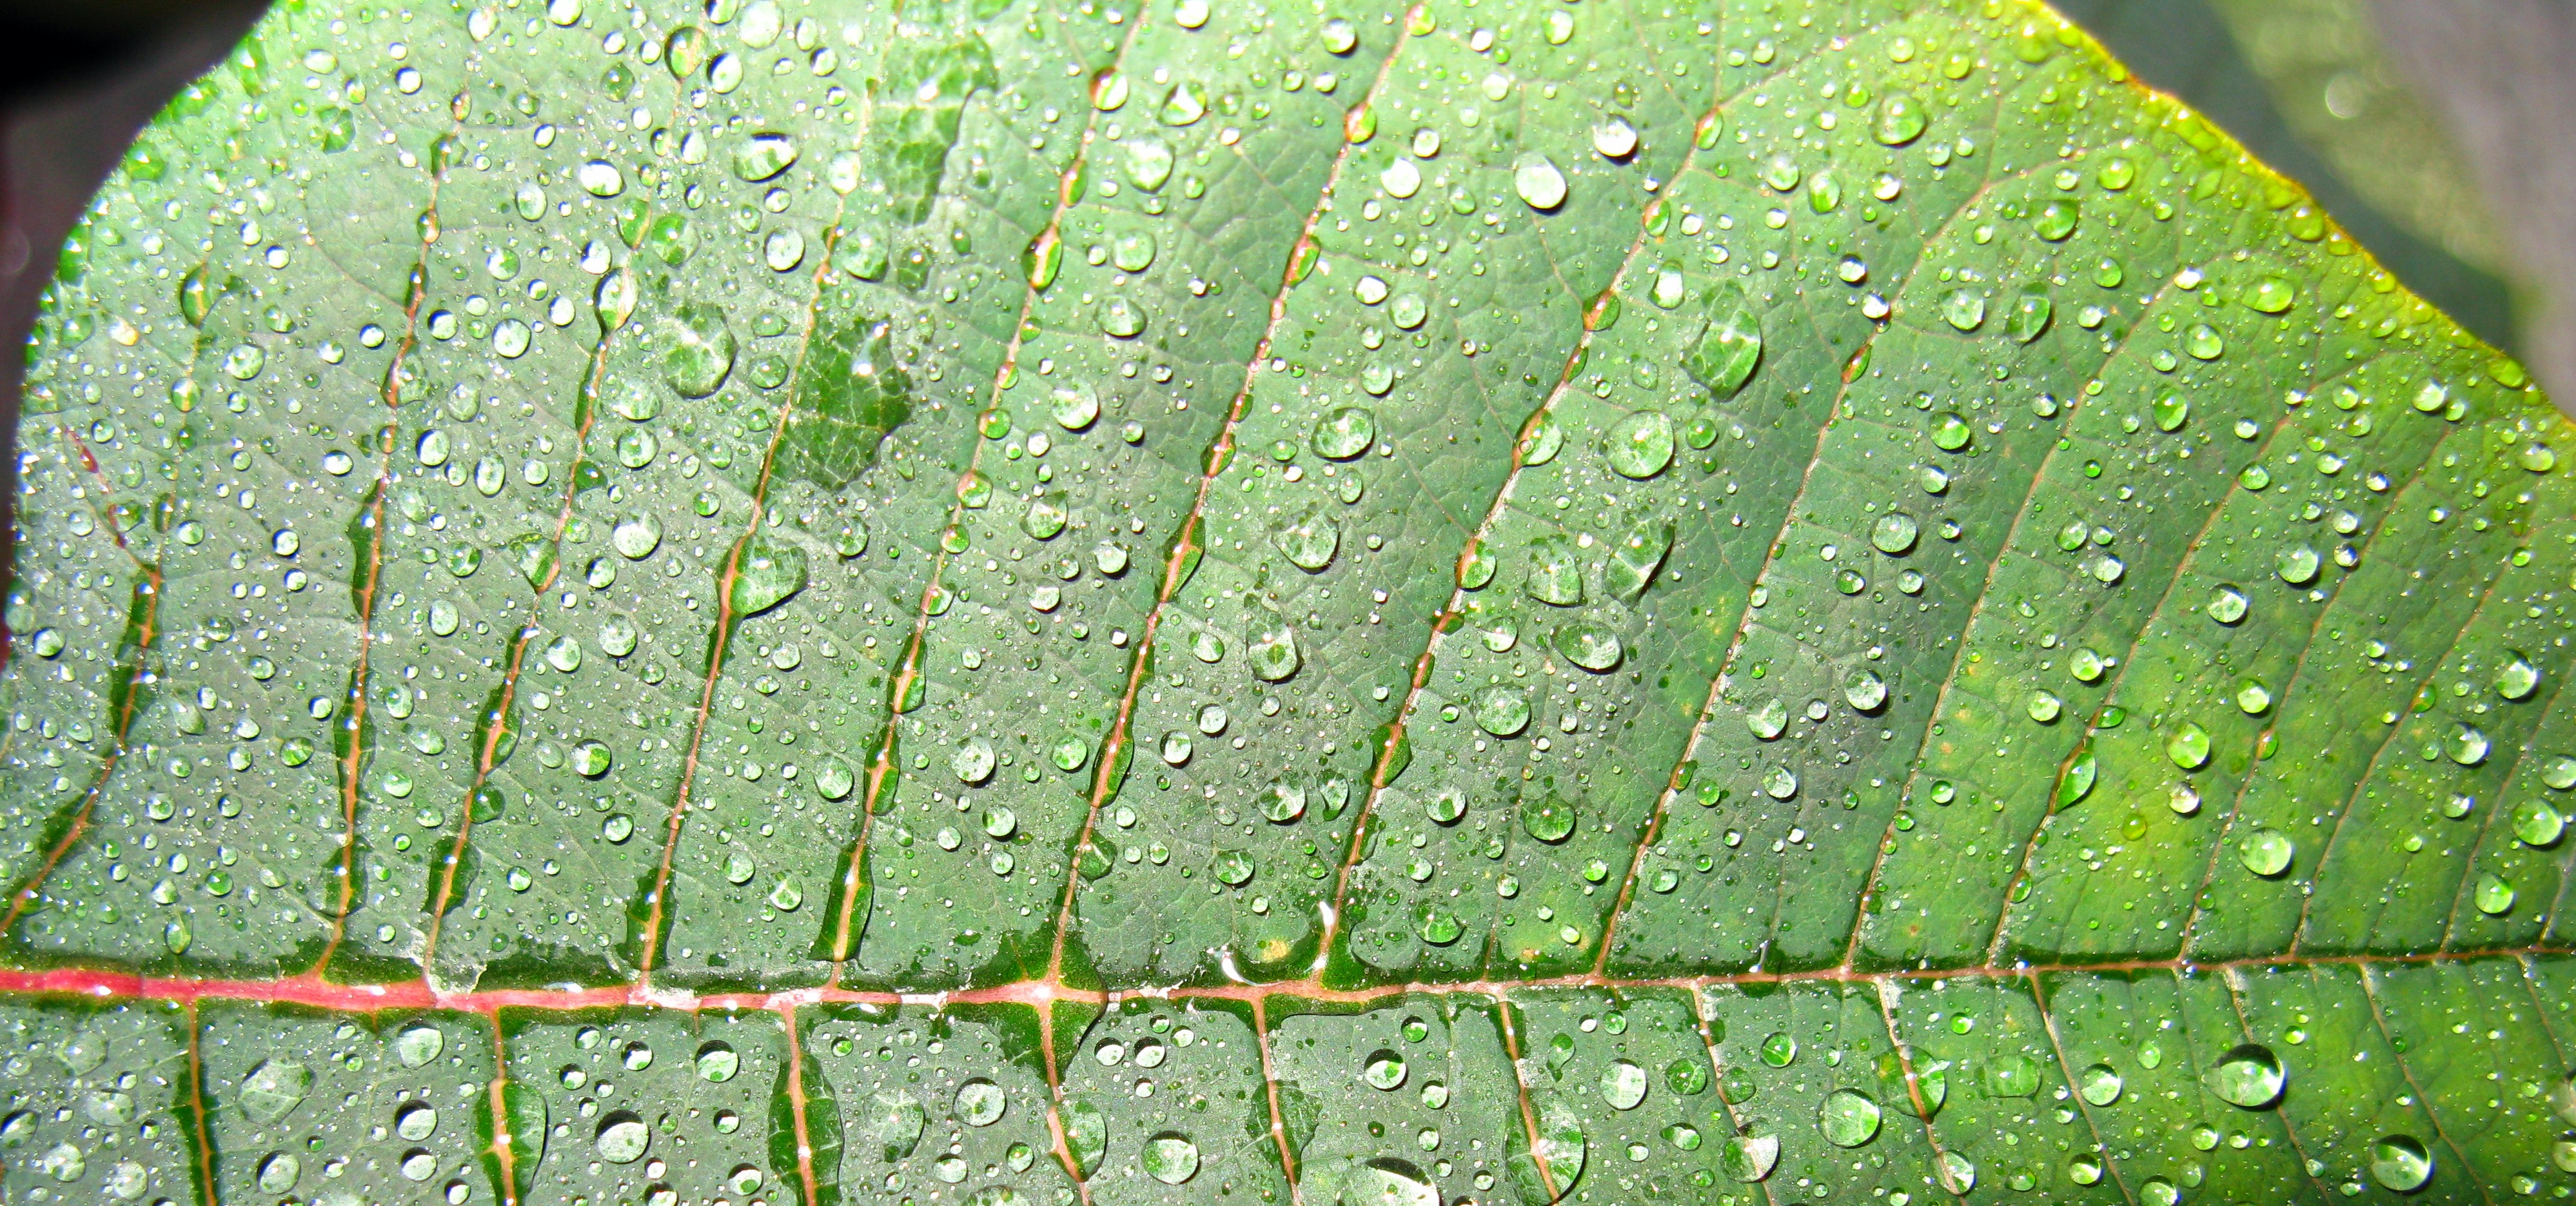 2008 05 17 - Euphorbia pulcherrima 05a